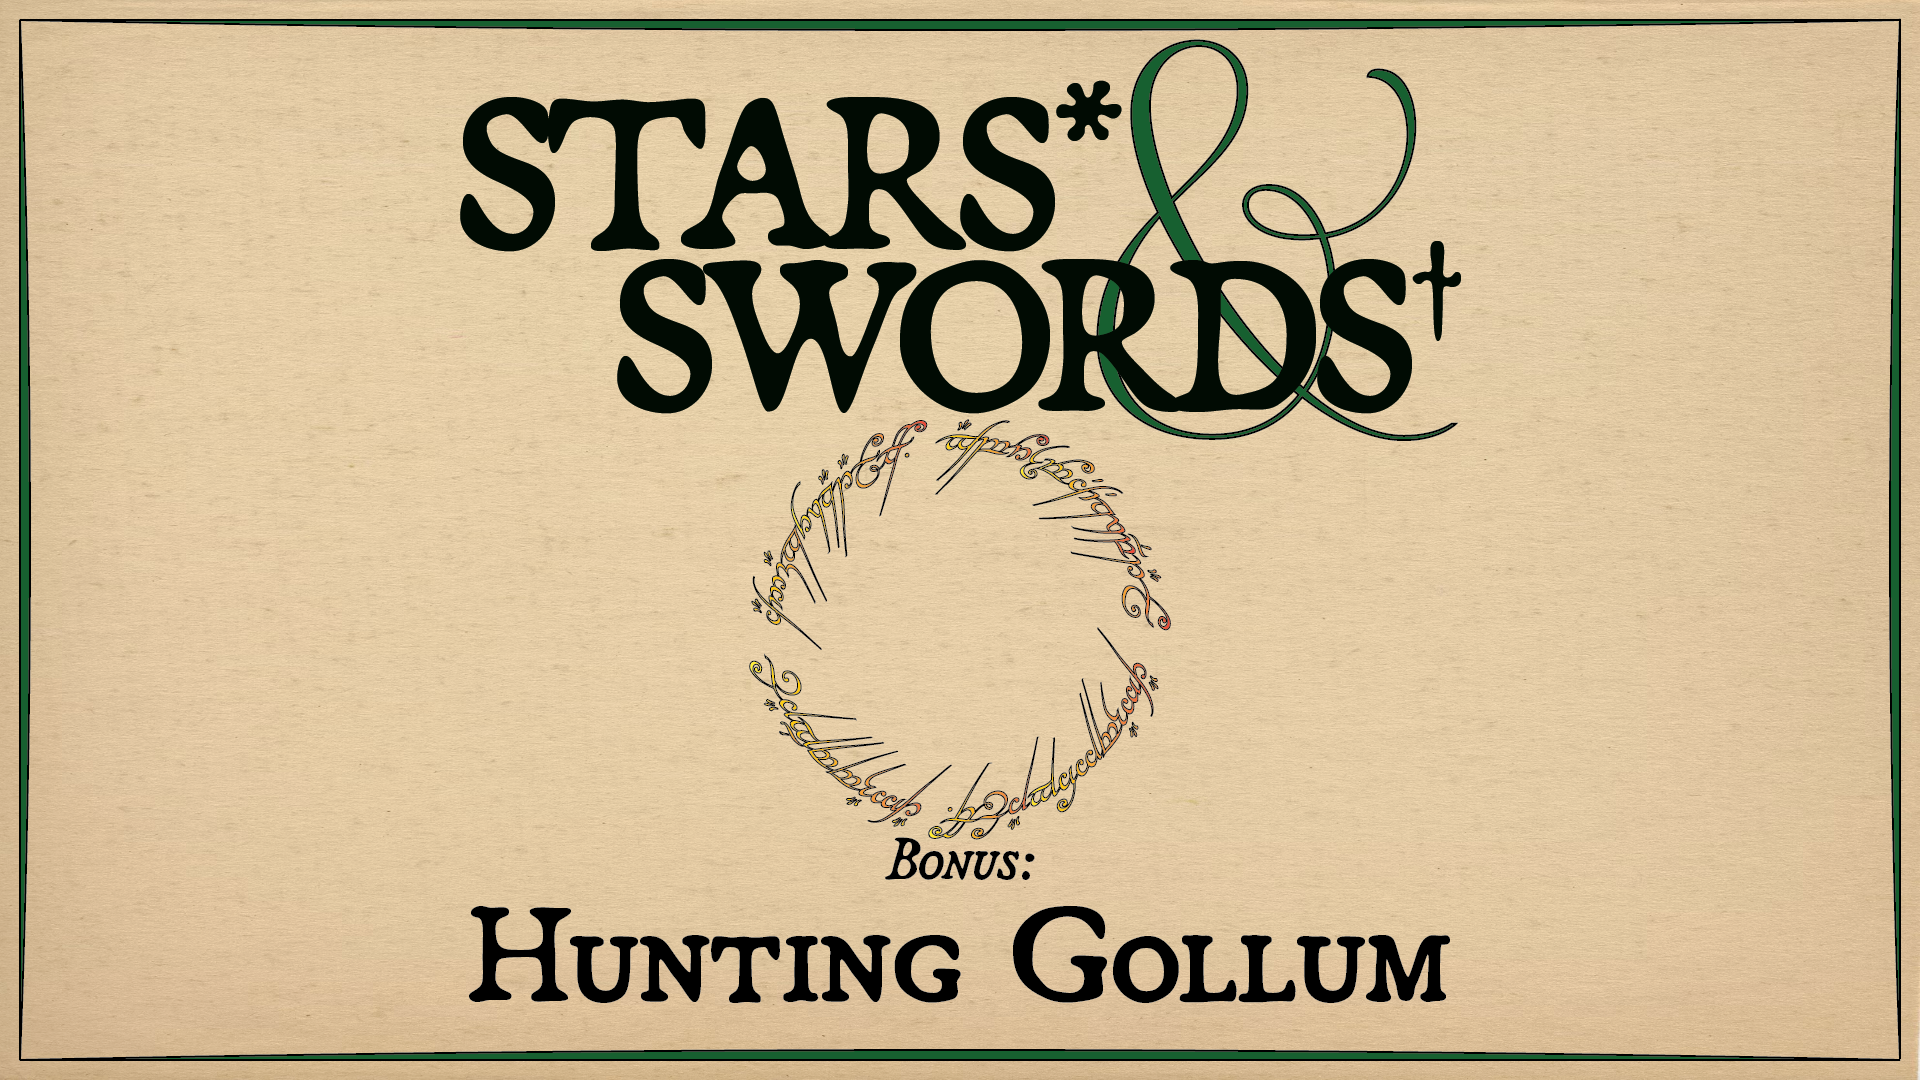 Bonus: Hunting Gollum